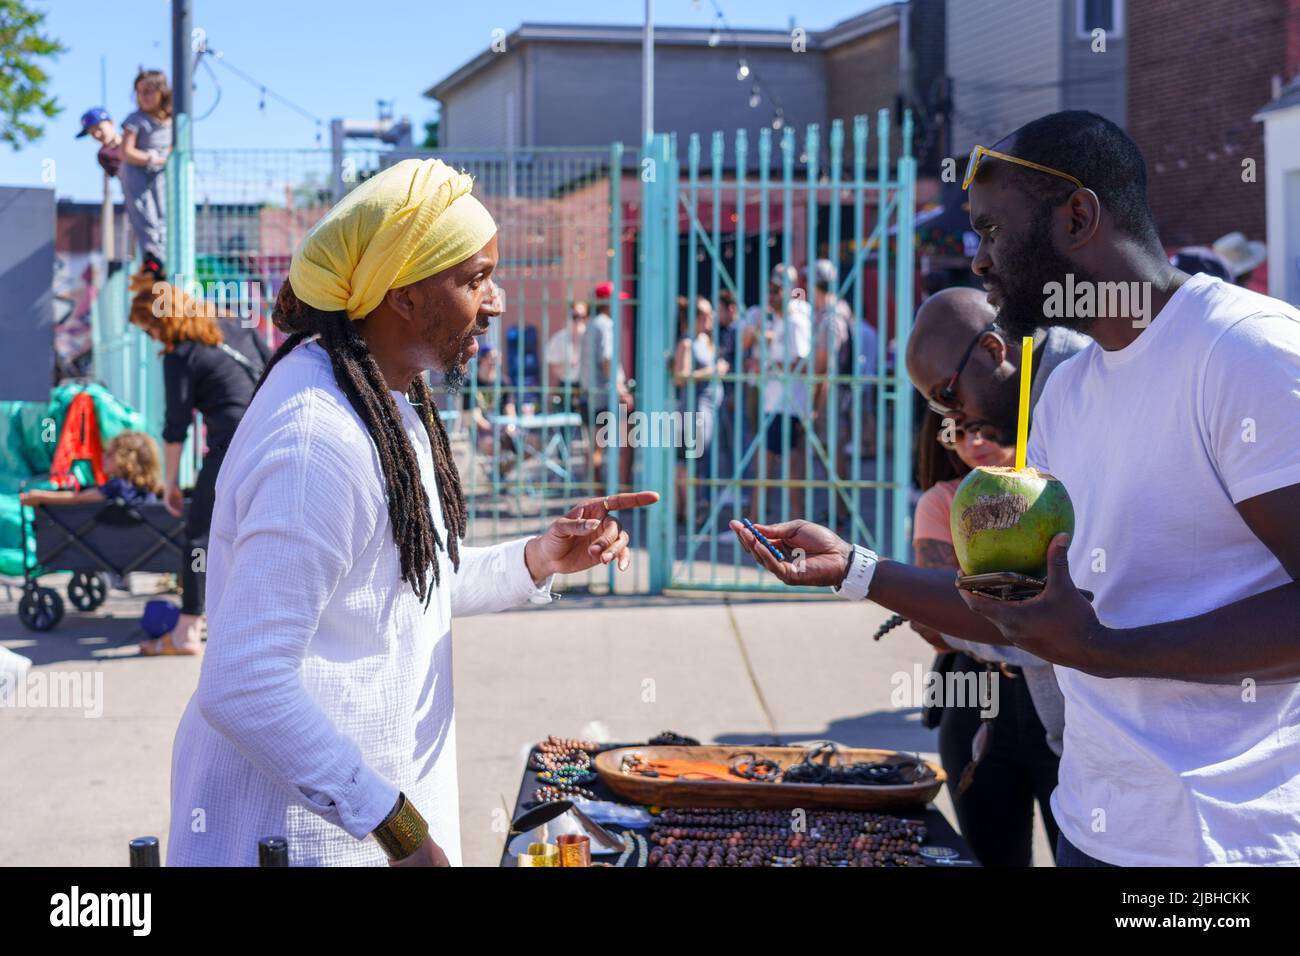 Un homme de descendance afro-caribéenne vend des souvenirs dans un kiosque pendant le festival Do West. Banque D'Images